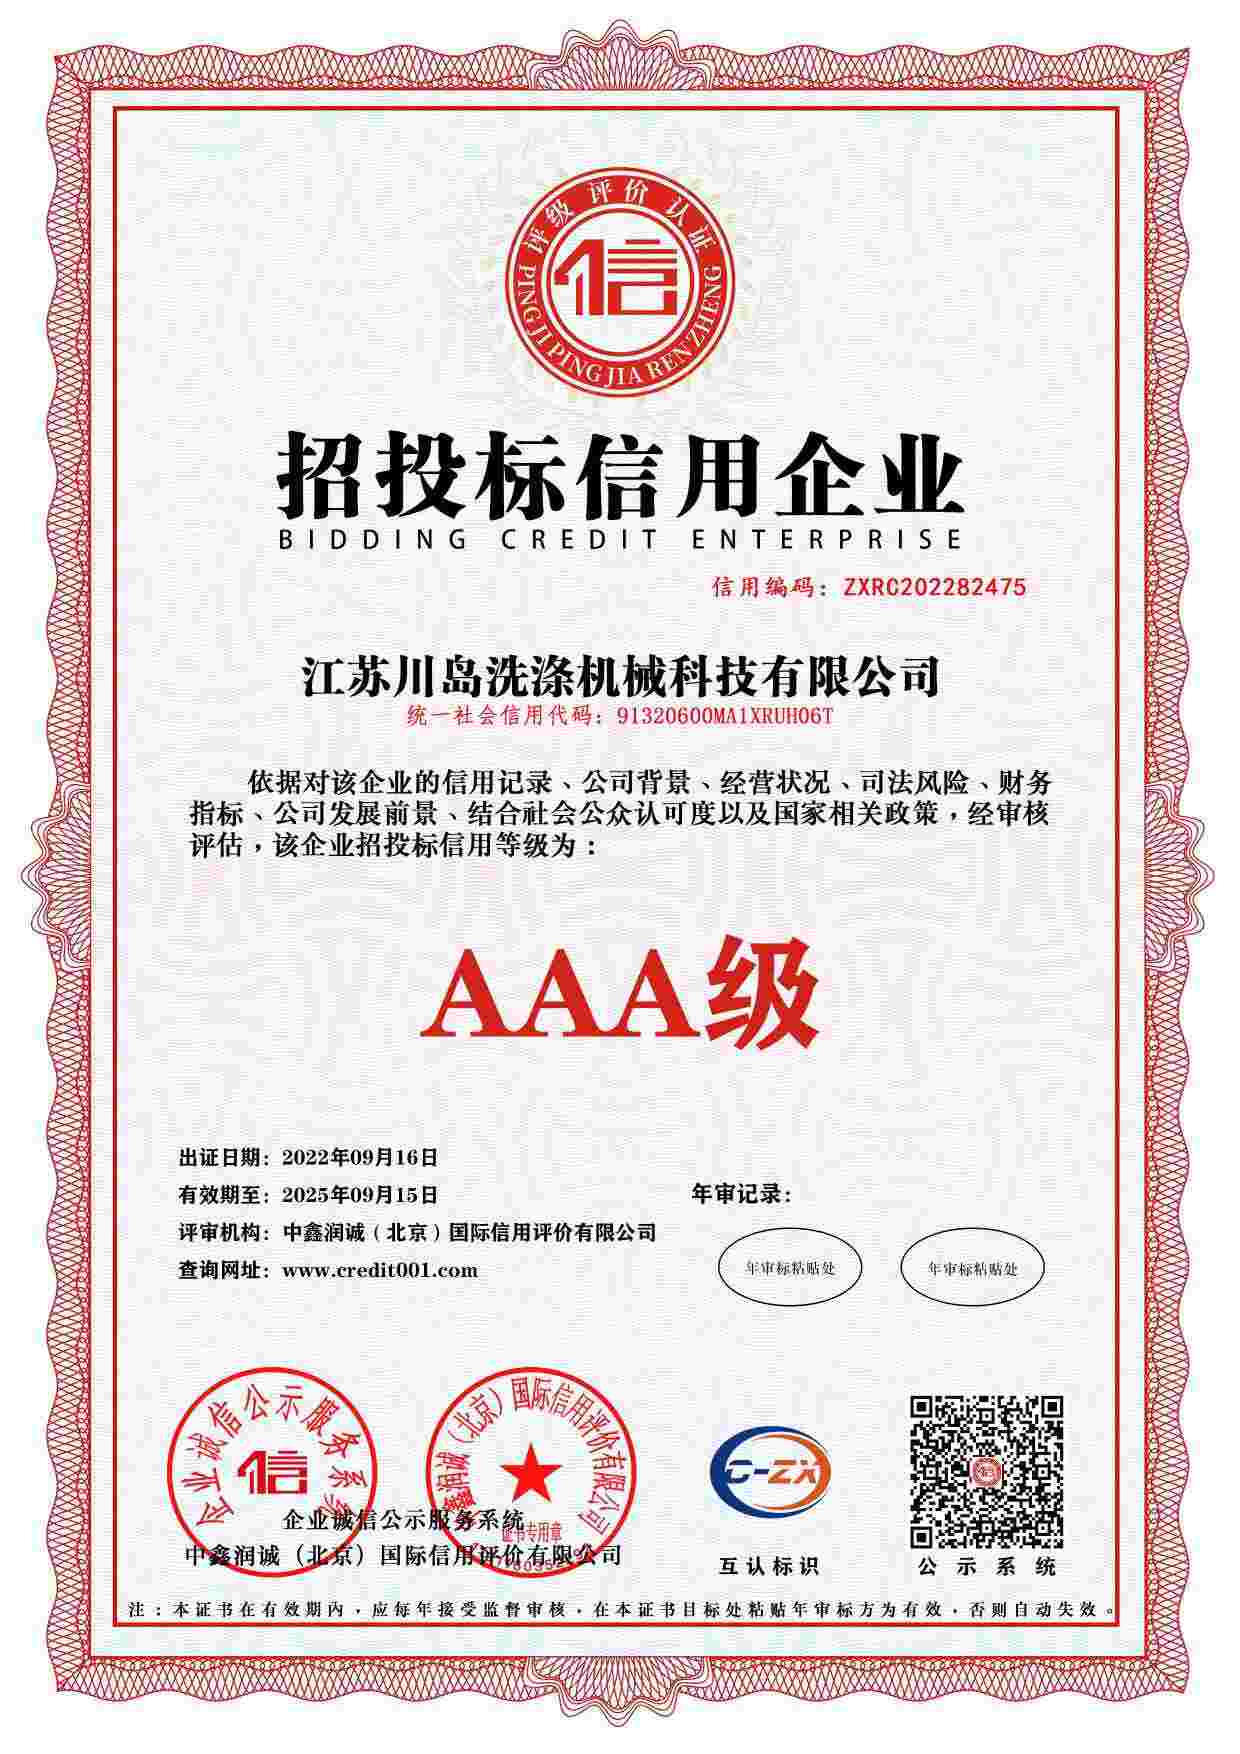 Enterprise credit rating certificate (7)